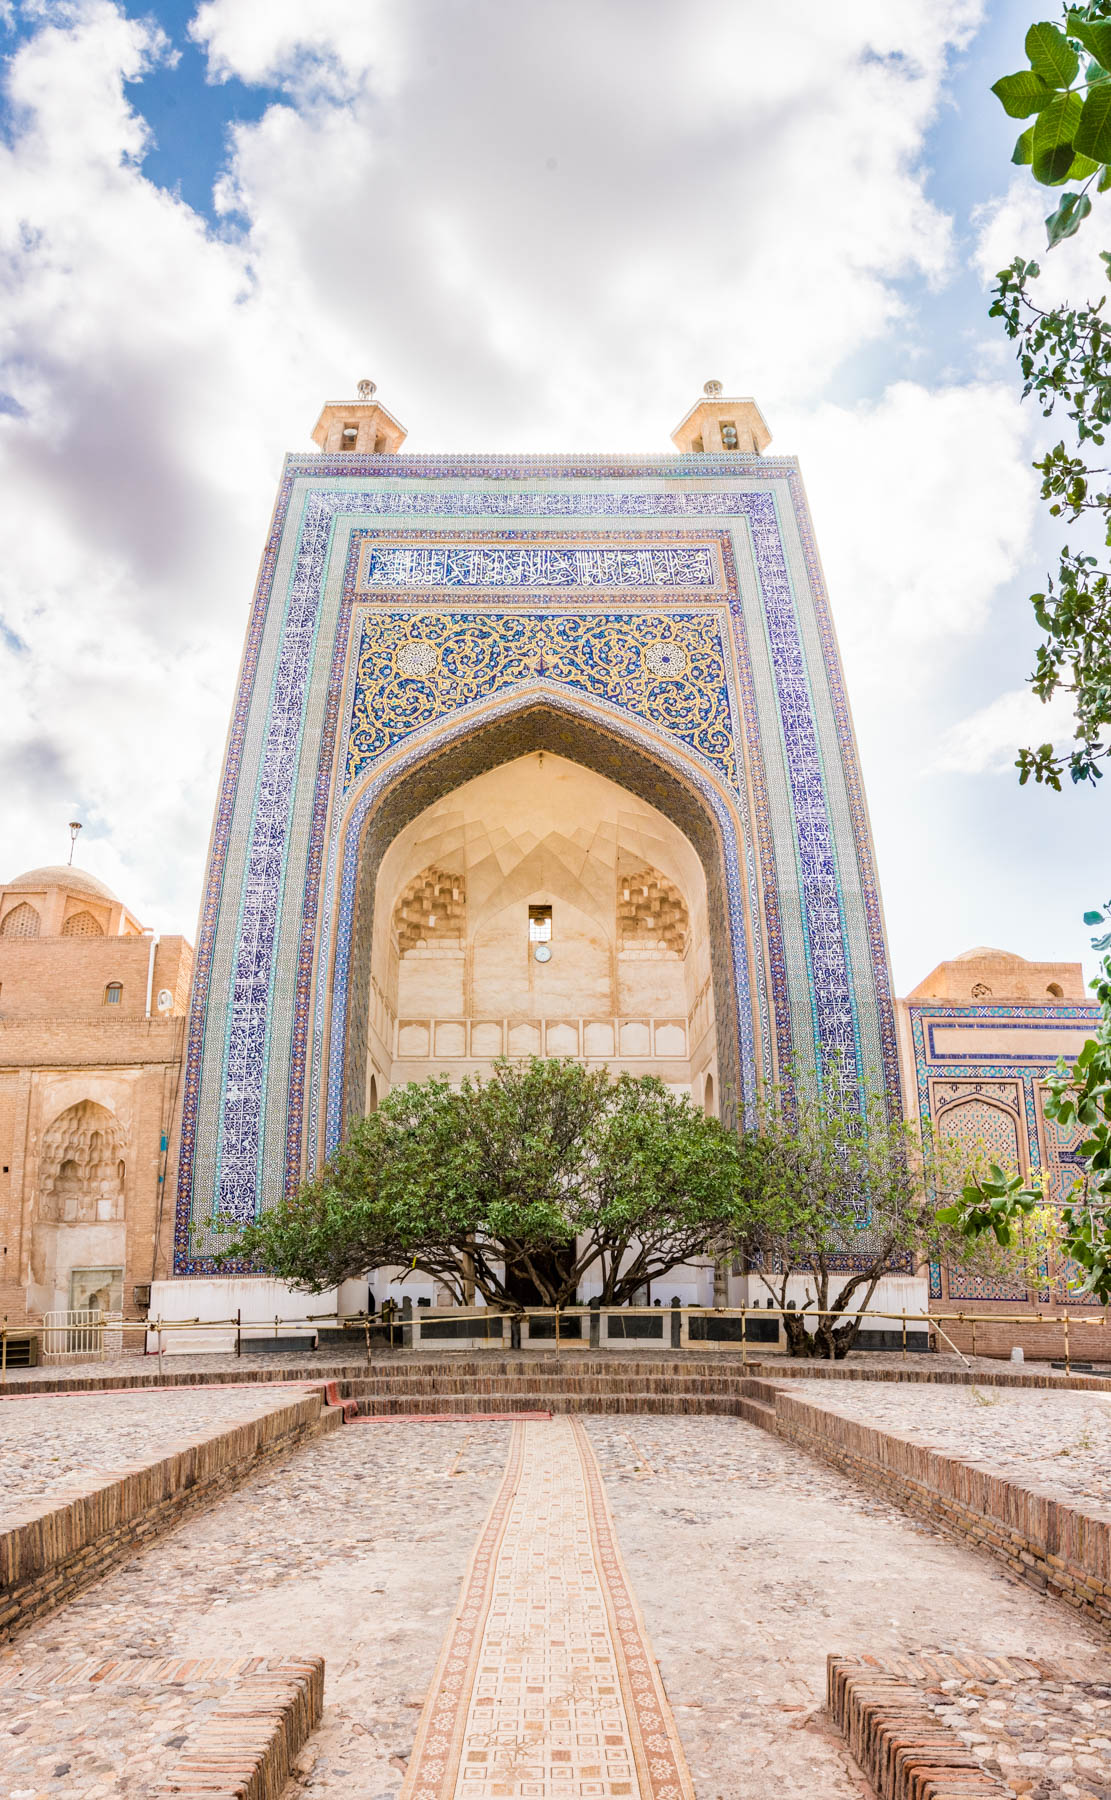 The exterior of the Jami mausoleum in Torbat-e Jam, Iran.